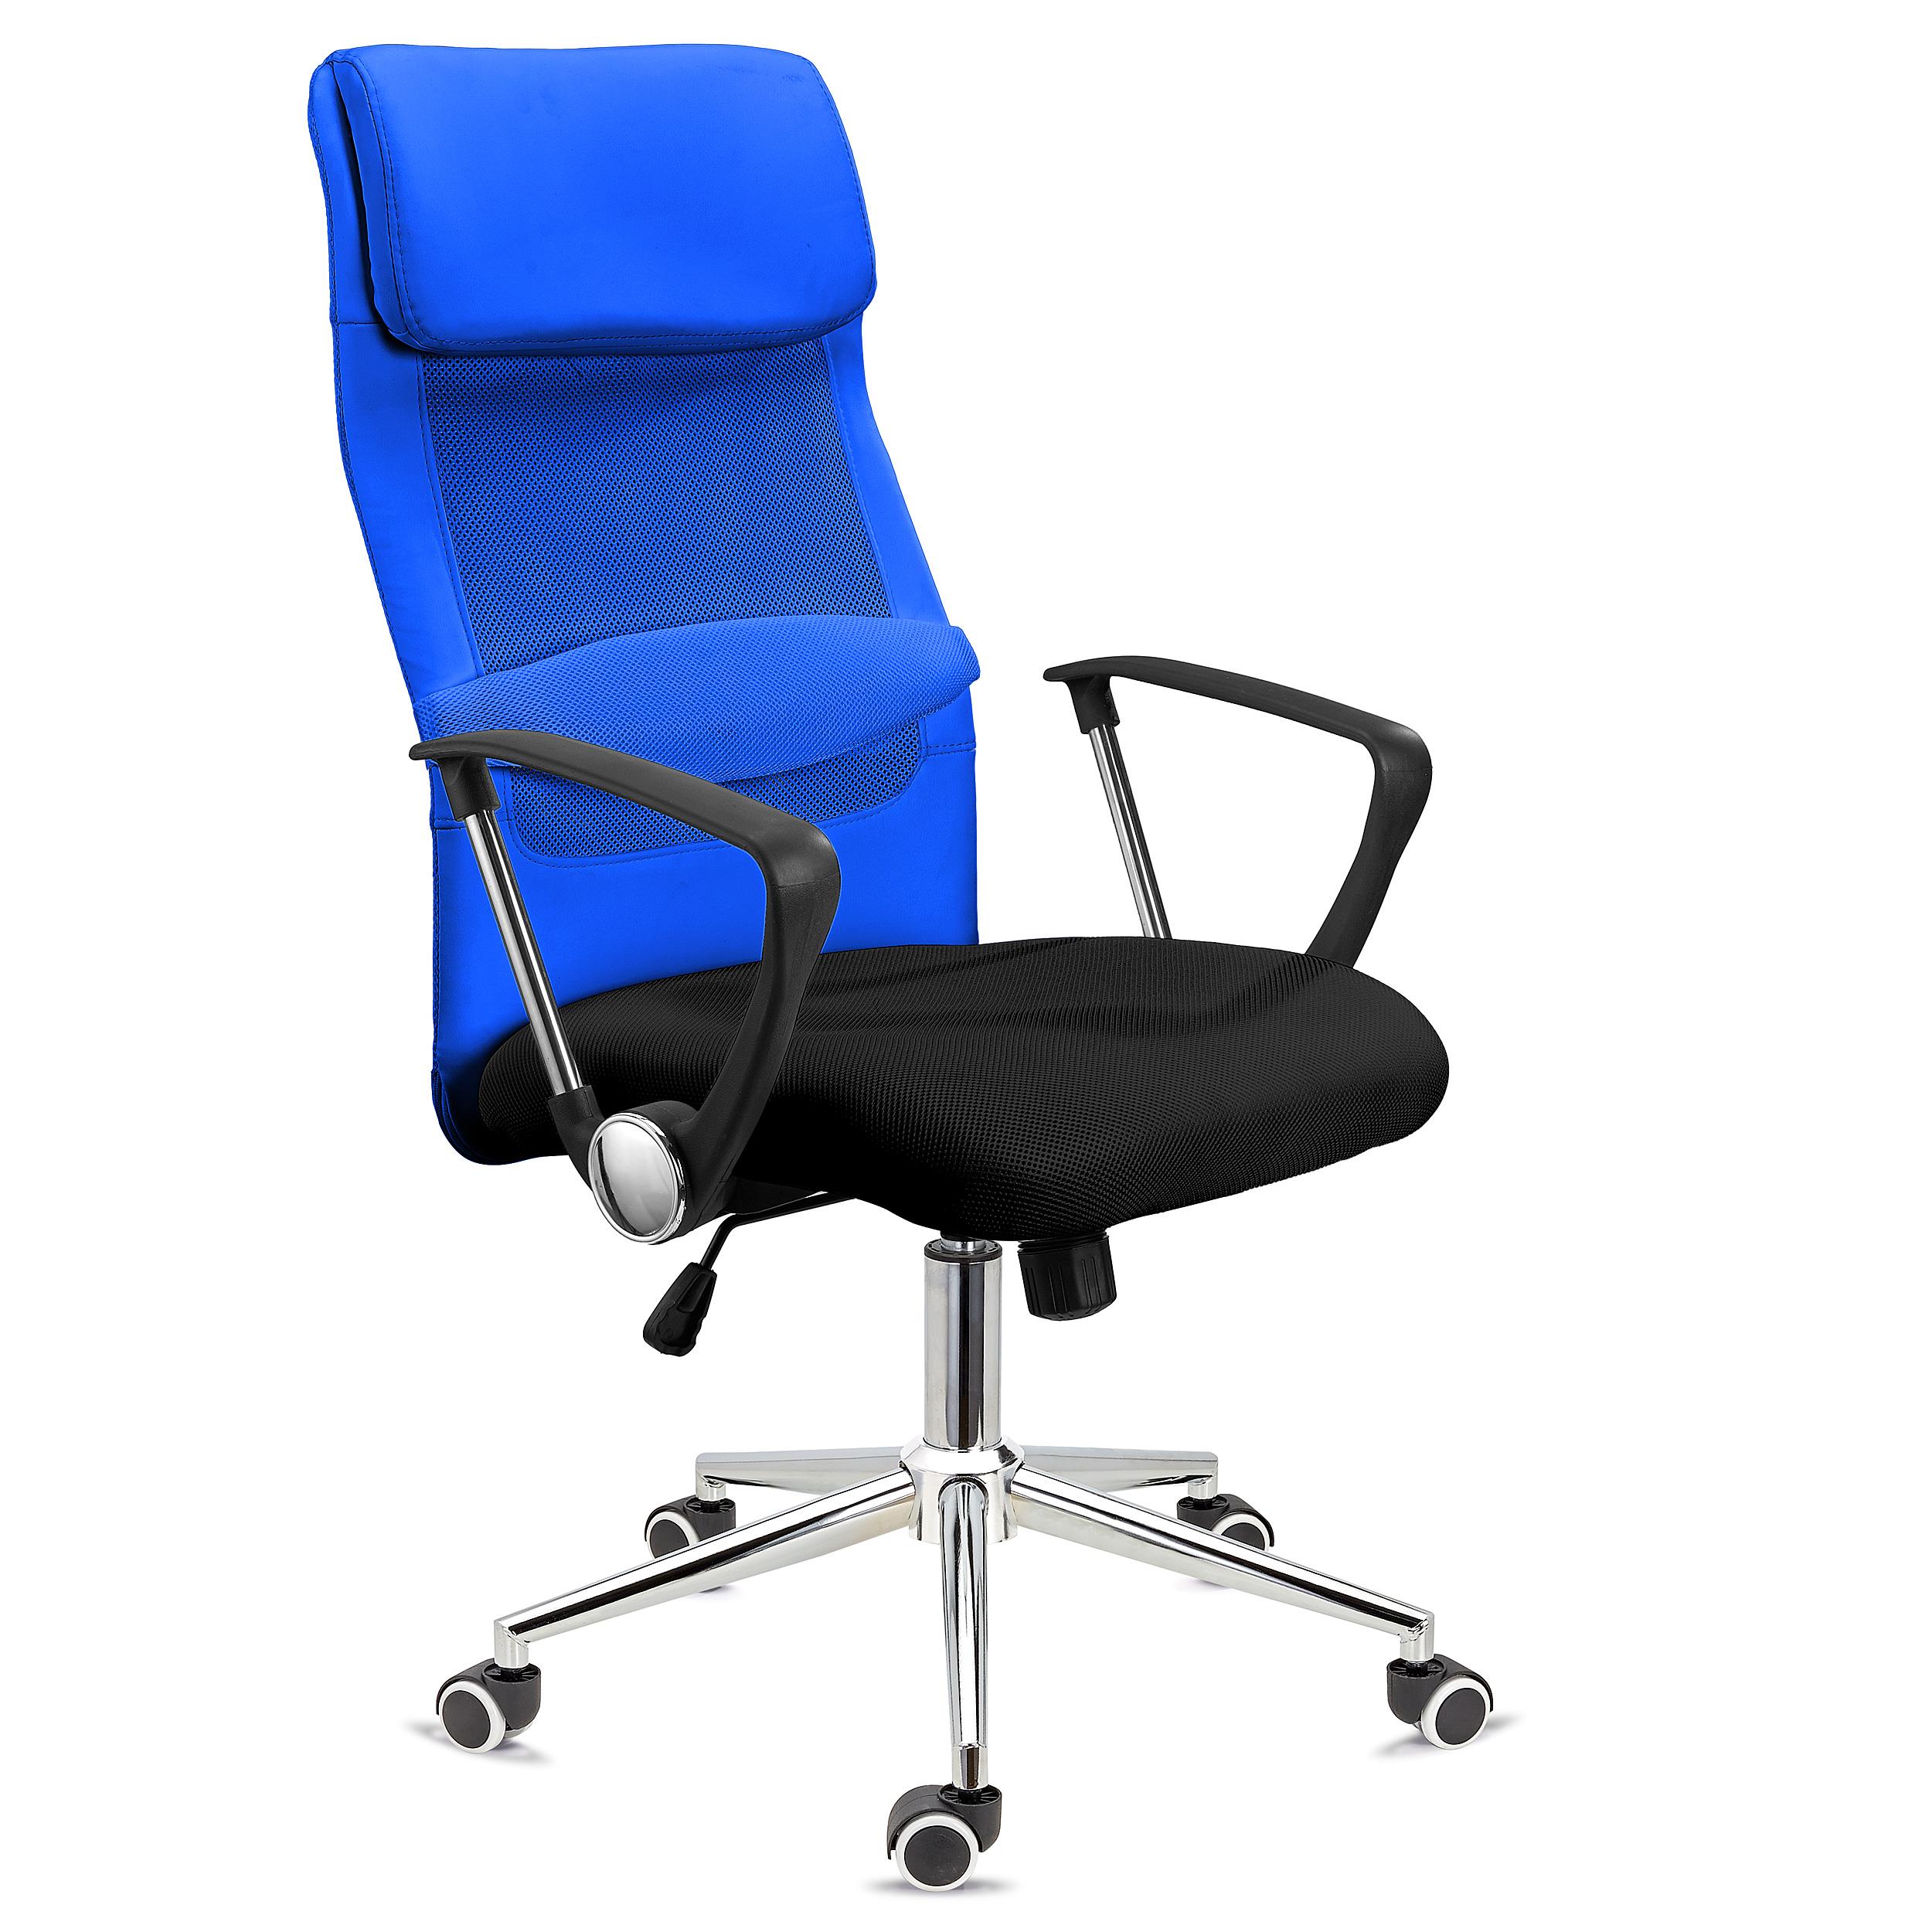 Chaise de Bureau NISEKO, Appui-tête Rembourré, Piétement Métallique Exclusif, en Bleu